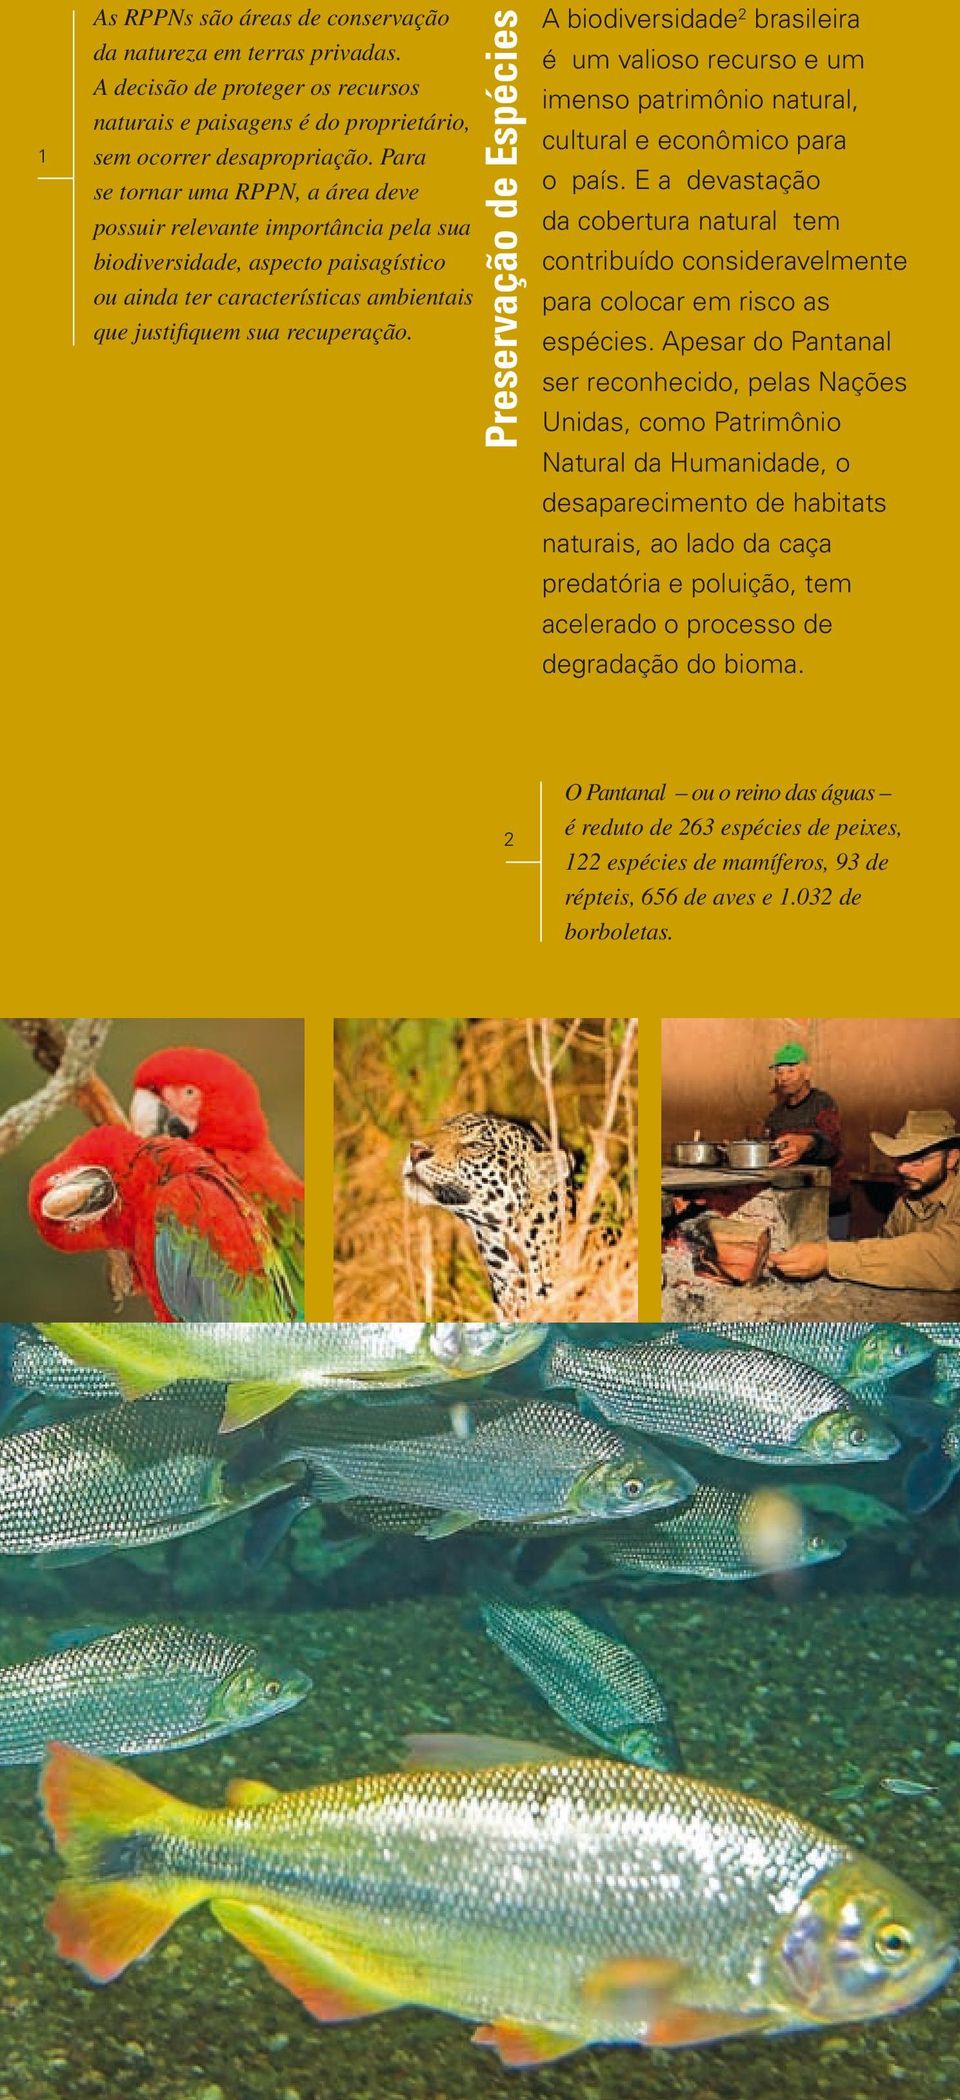 Preservação de Espécies A biodiversidade 2 brasileira é um valioso recurso e um imenso patrimônio natural, cultural e econômico para o país.